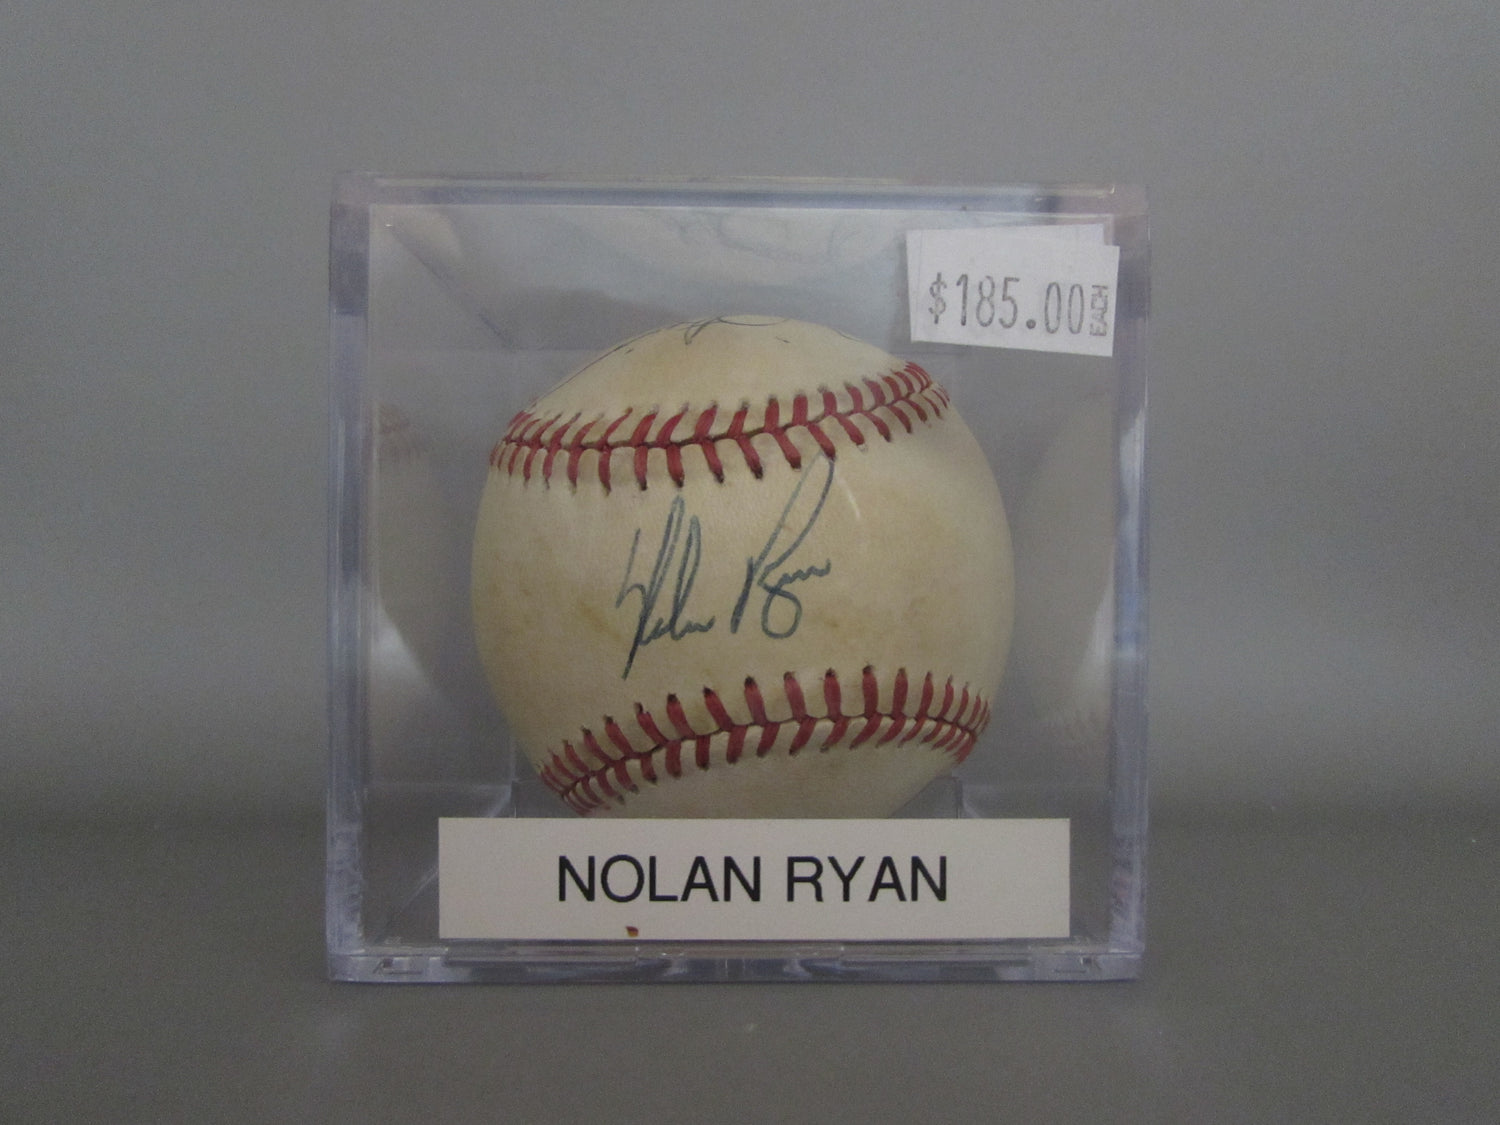 Nolan Ryan signed baseball